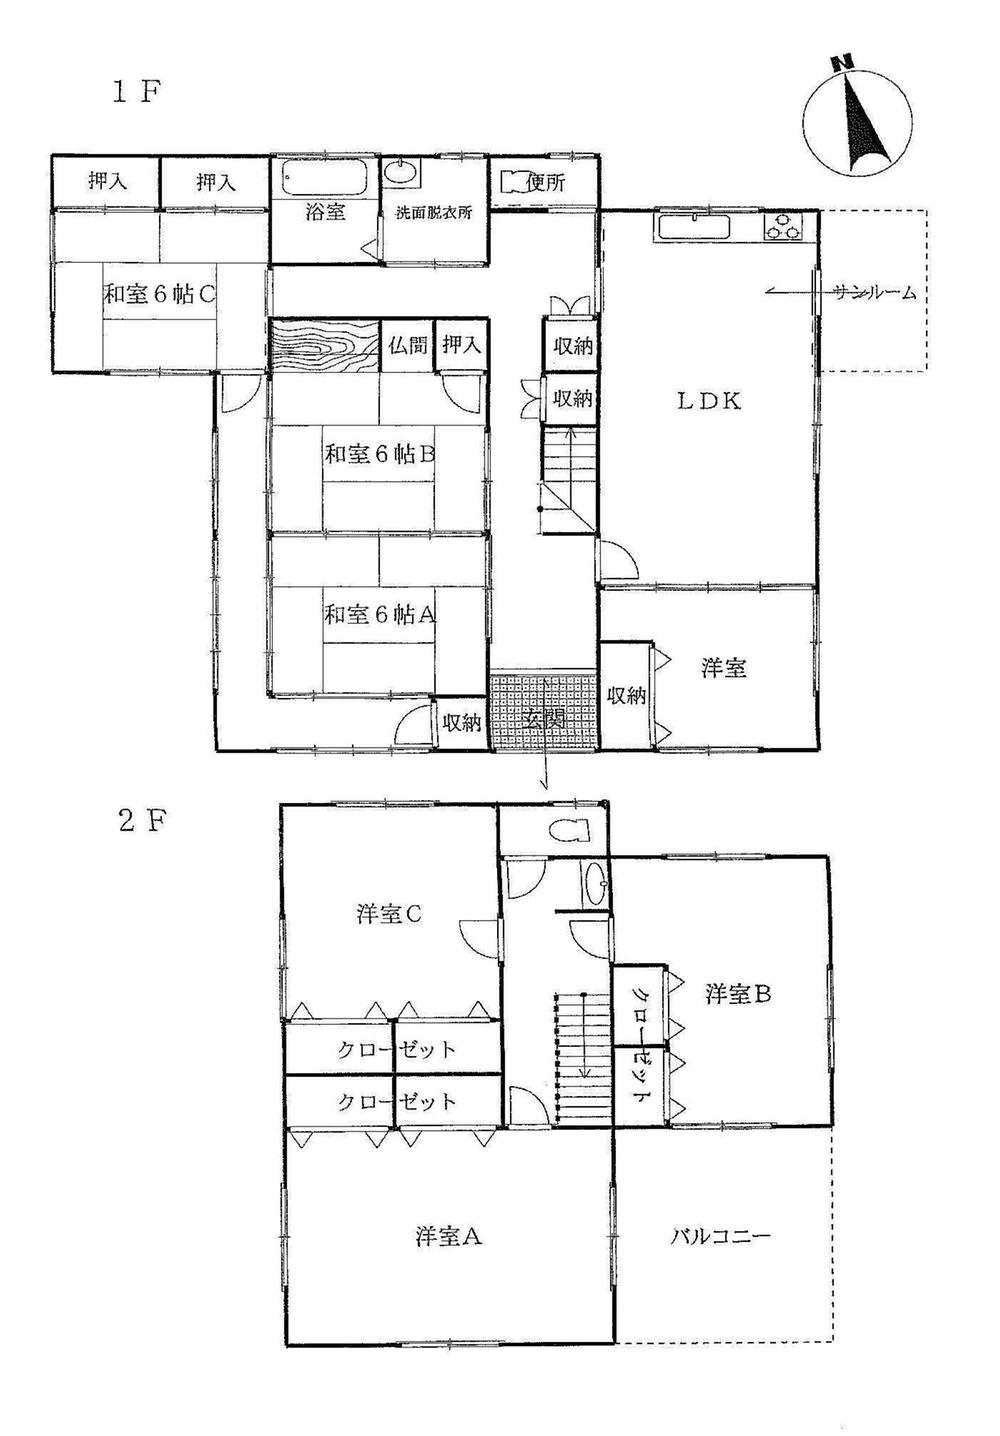 Floor plan. 27.5 million yen, 7LDK, Land area 900.83 sq m , Building area 209 sq m